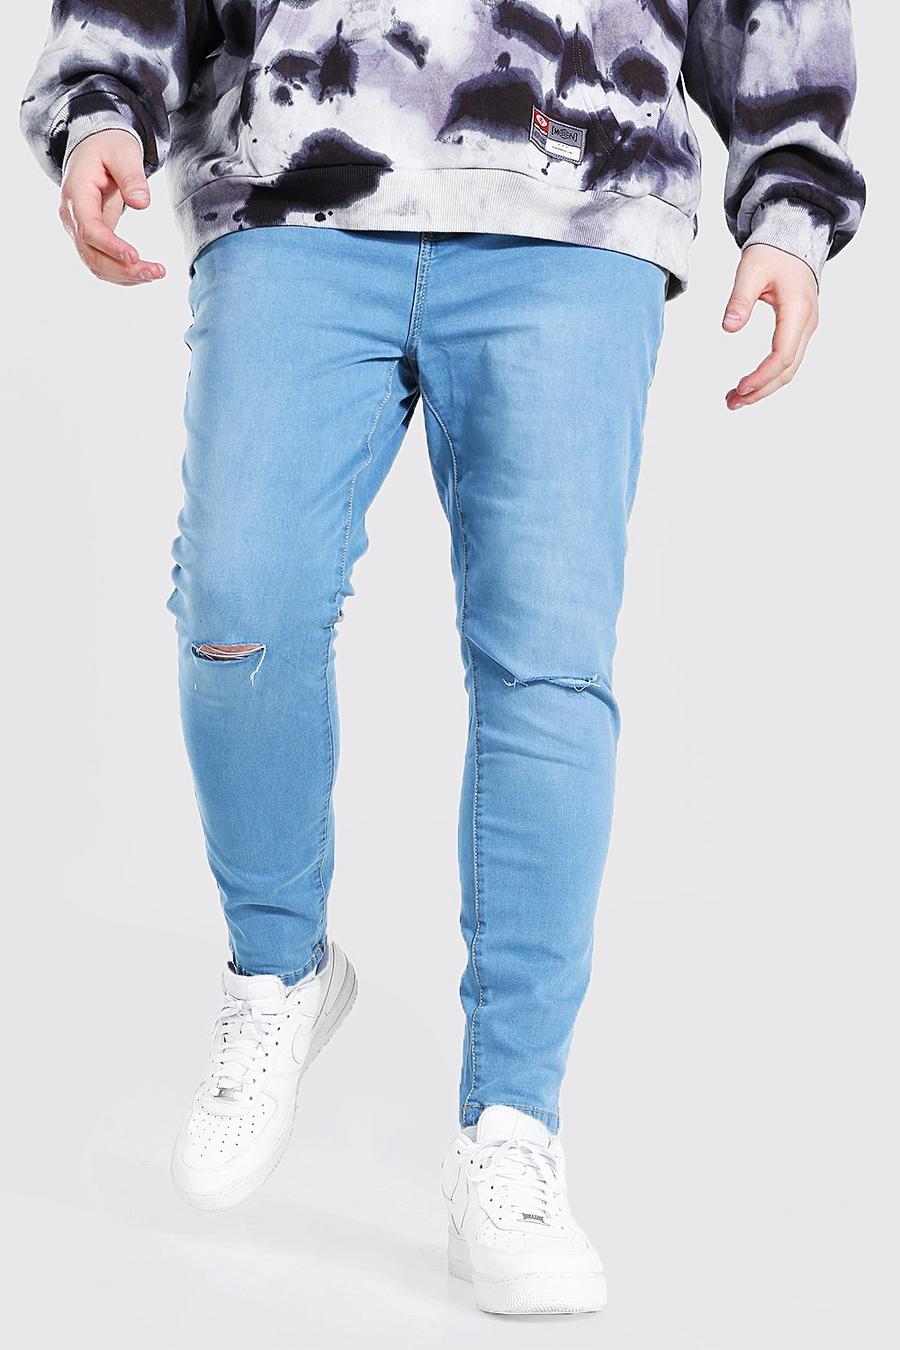 כחול בהיר סופר סקיני ג'ינס עם חריצים בברכיים לגברים גדולים וגבוהים image number 1